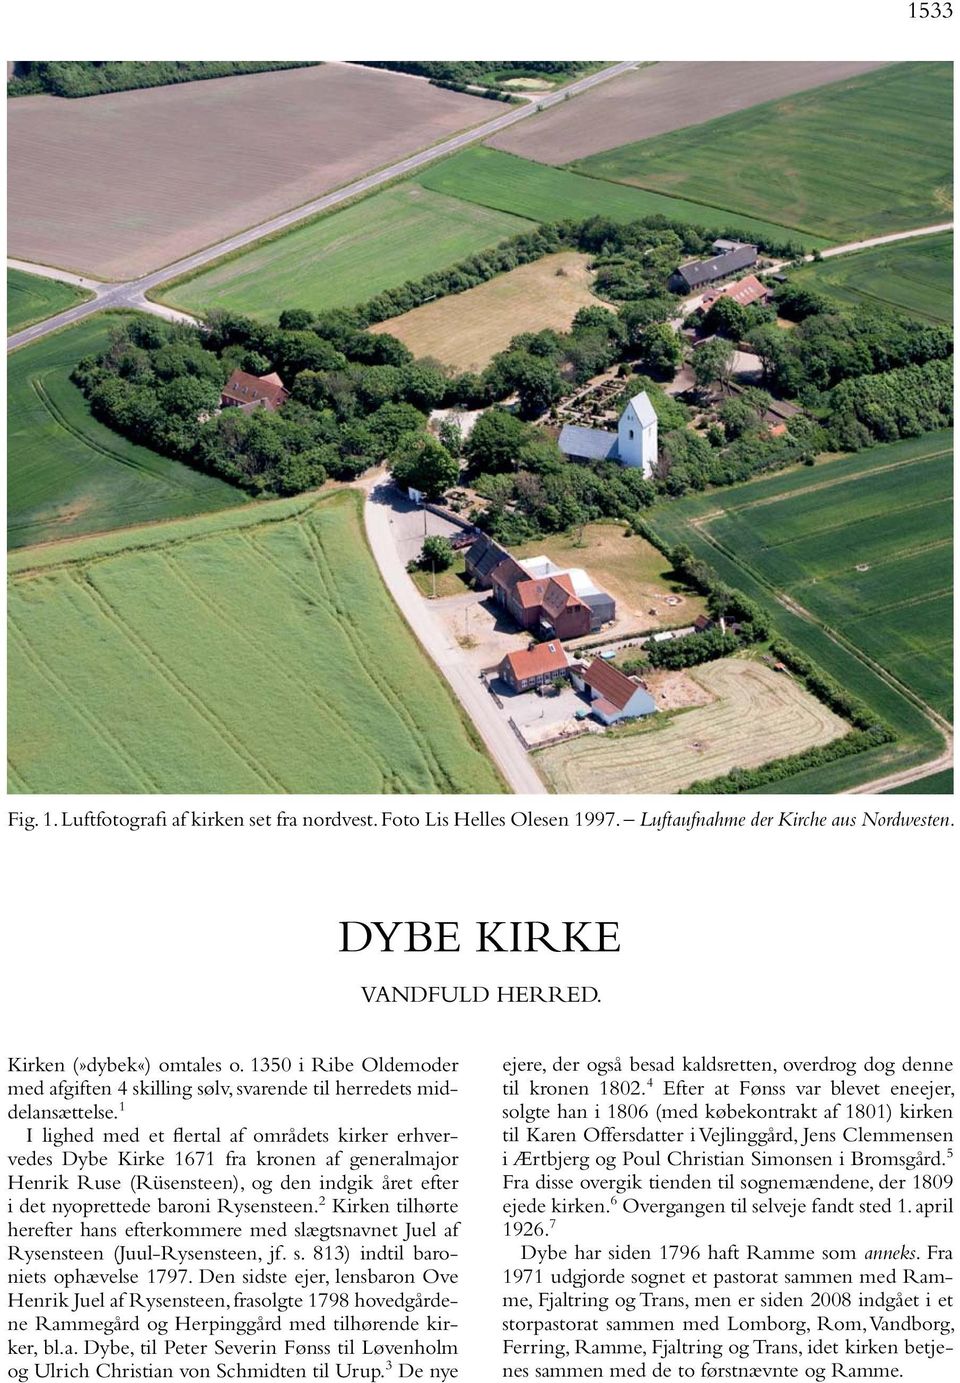 1 I lighed med et flertal af områdets kirker erhvervedes Dybe Kirke 1671 fra kronen af generalmajor Henrik Ruse (Rüsensteen), og den indgik året efter i det nyoprettede baroni Rysensteen.